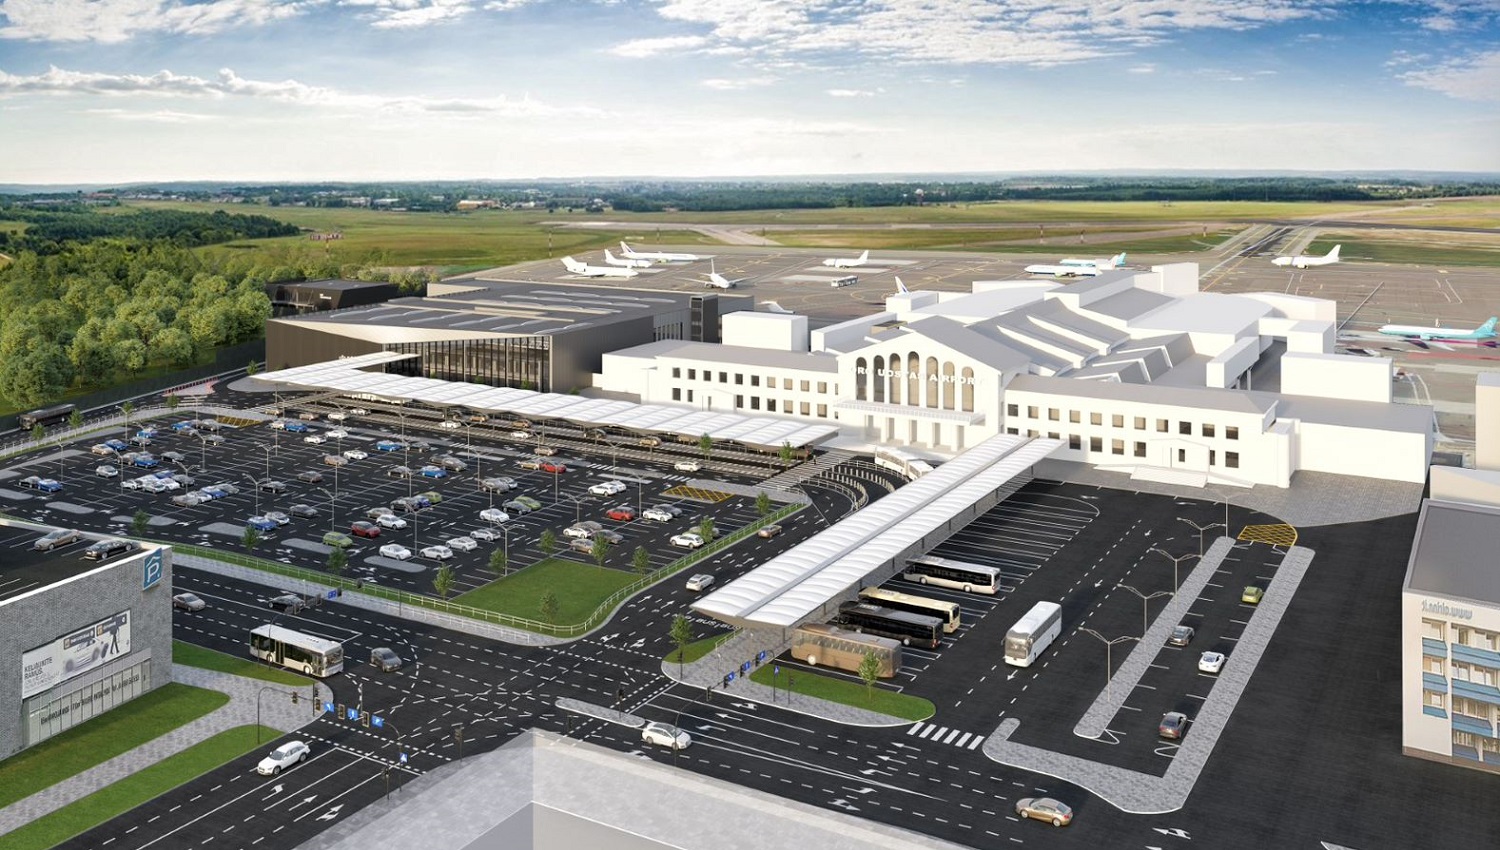 Vilniaus oro uosto projektas sklypo plano dalies rengimas